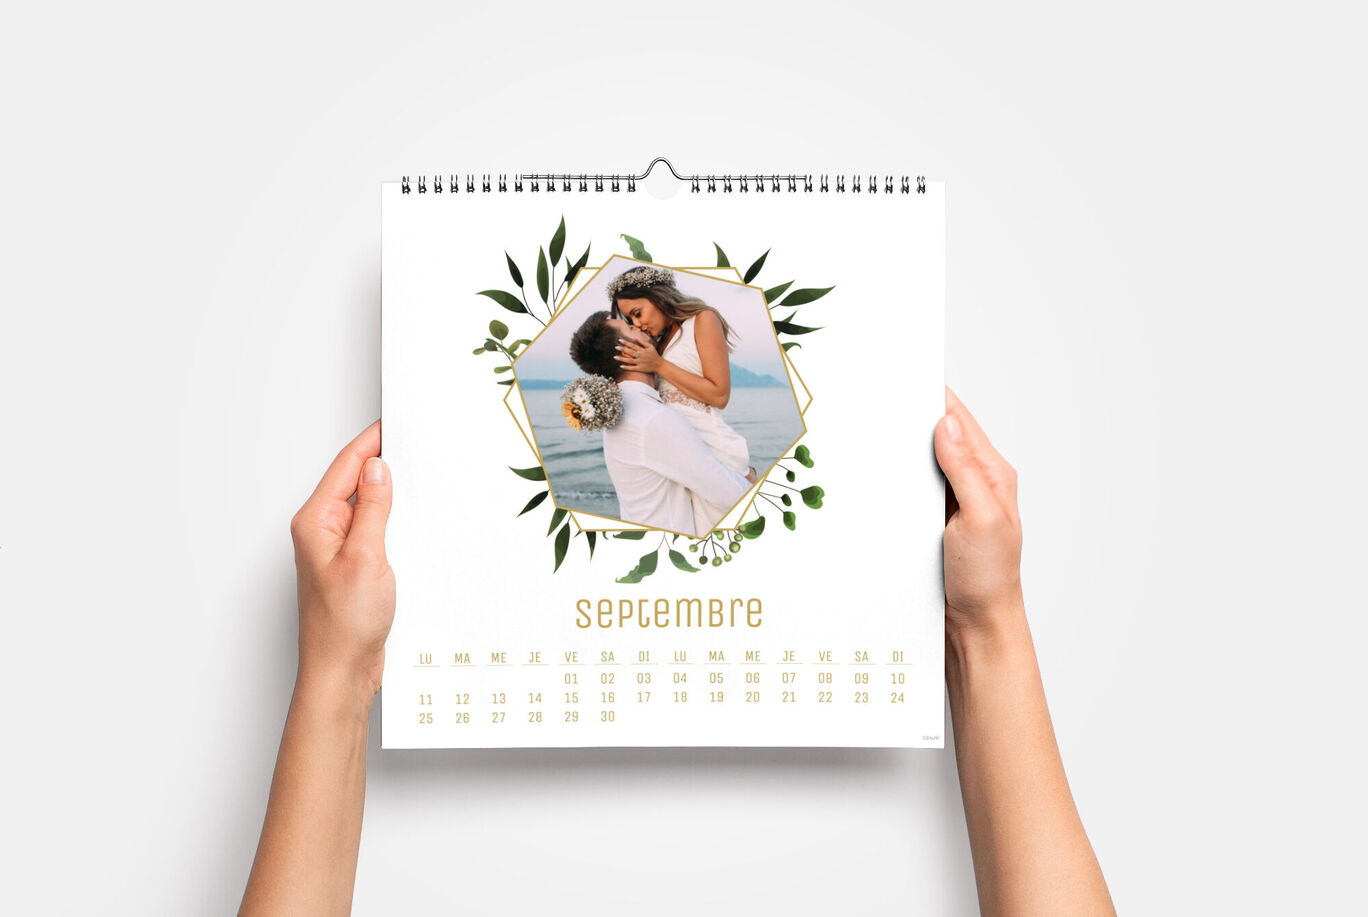 Le calendrier photo personnalisé : un cadeau pour toute la famille